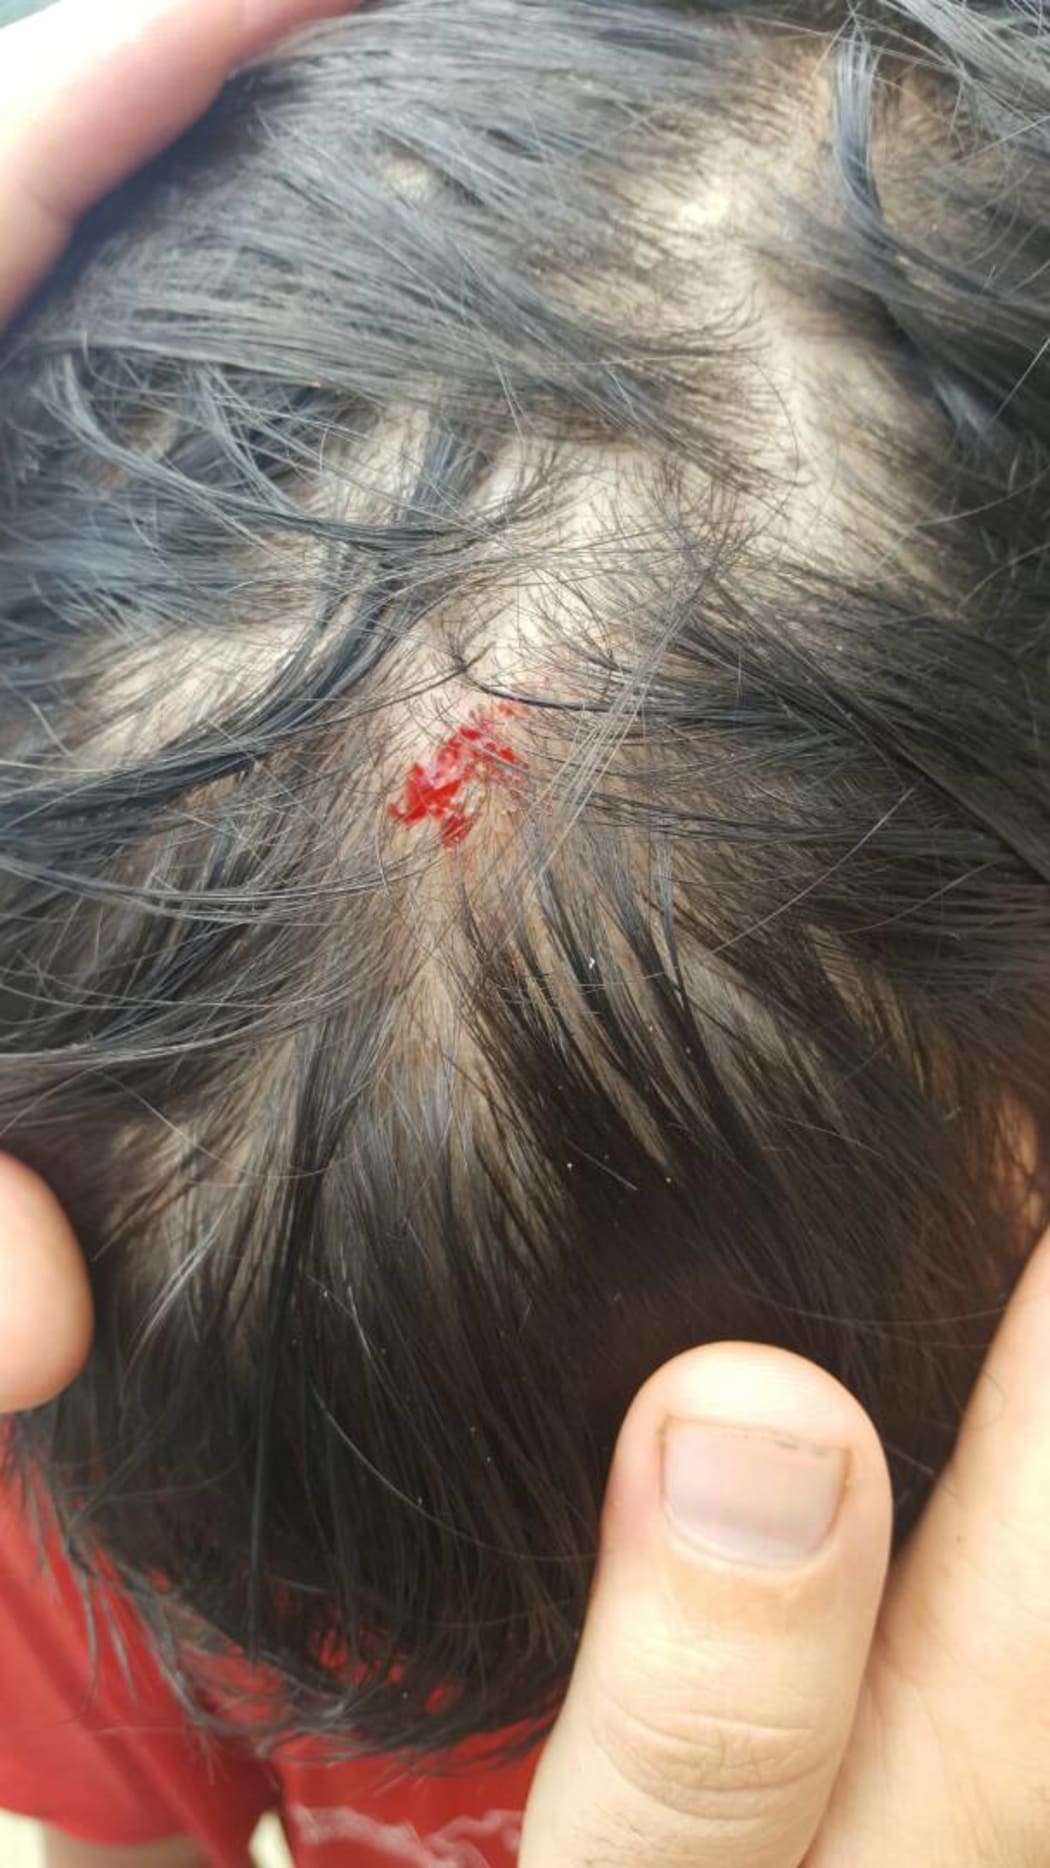 Manus refugee hurt during police assault